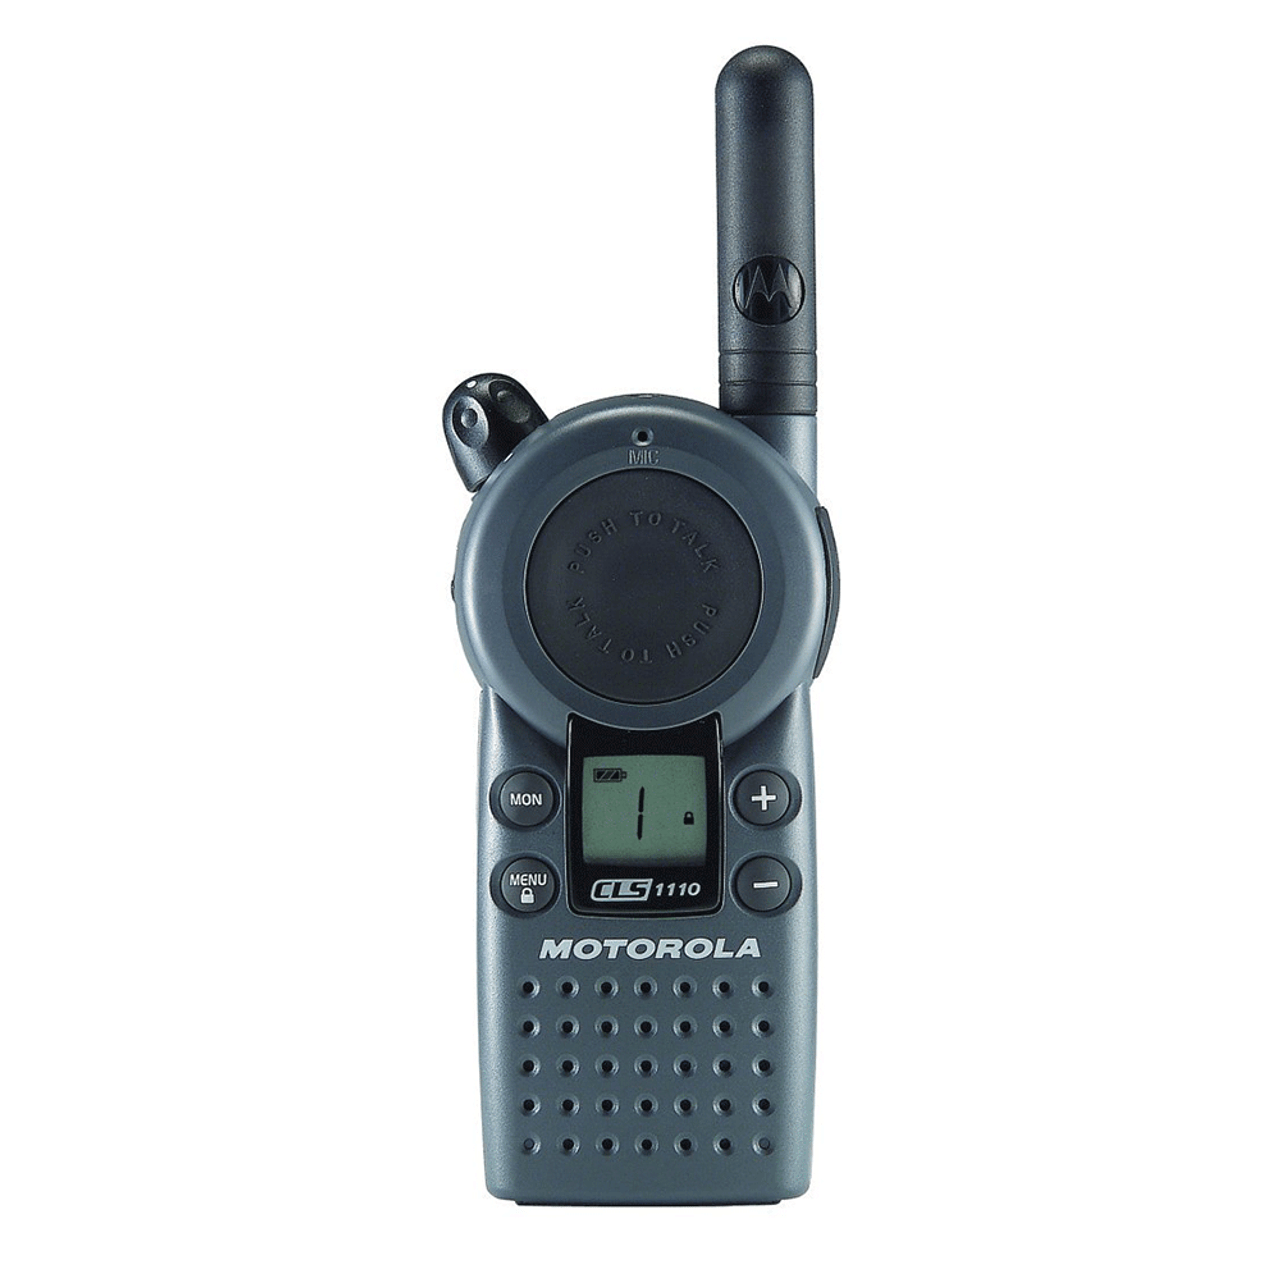 Pack of Motorola CLS1110 Two Way Radio Walkie Talkies (UHF) - 3